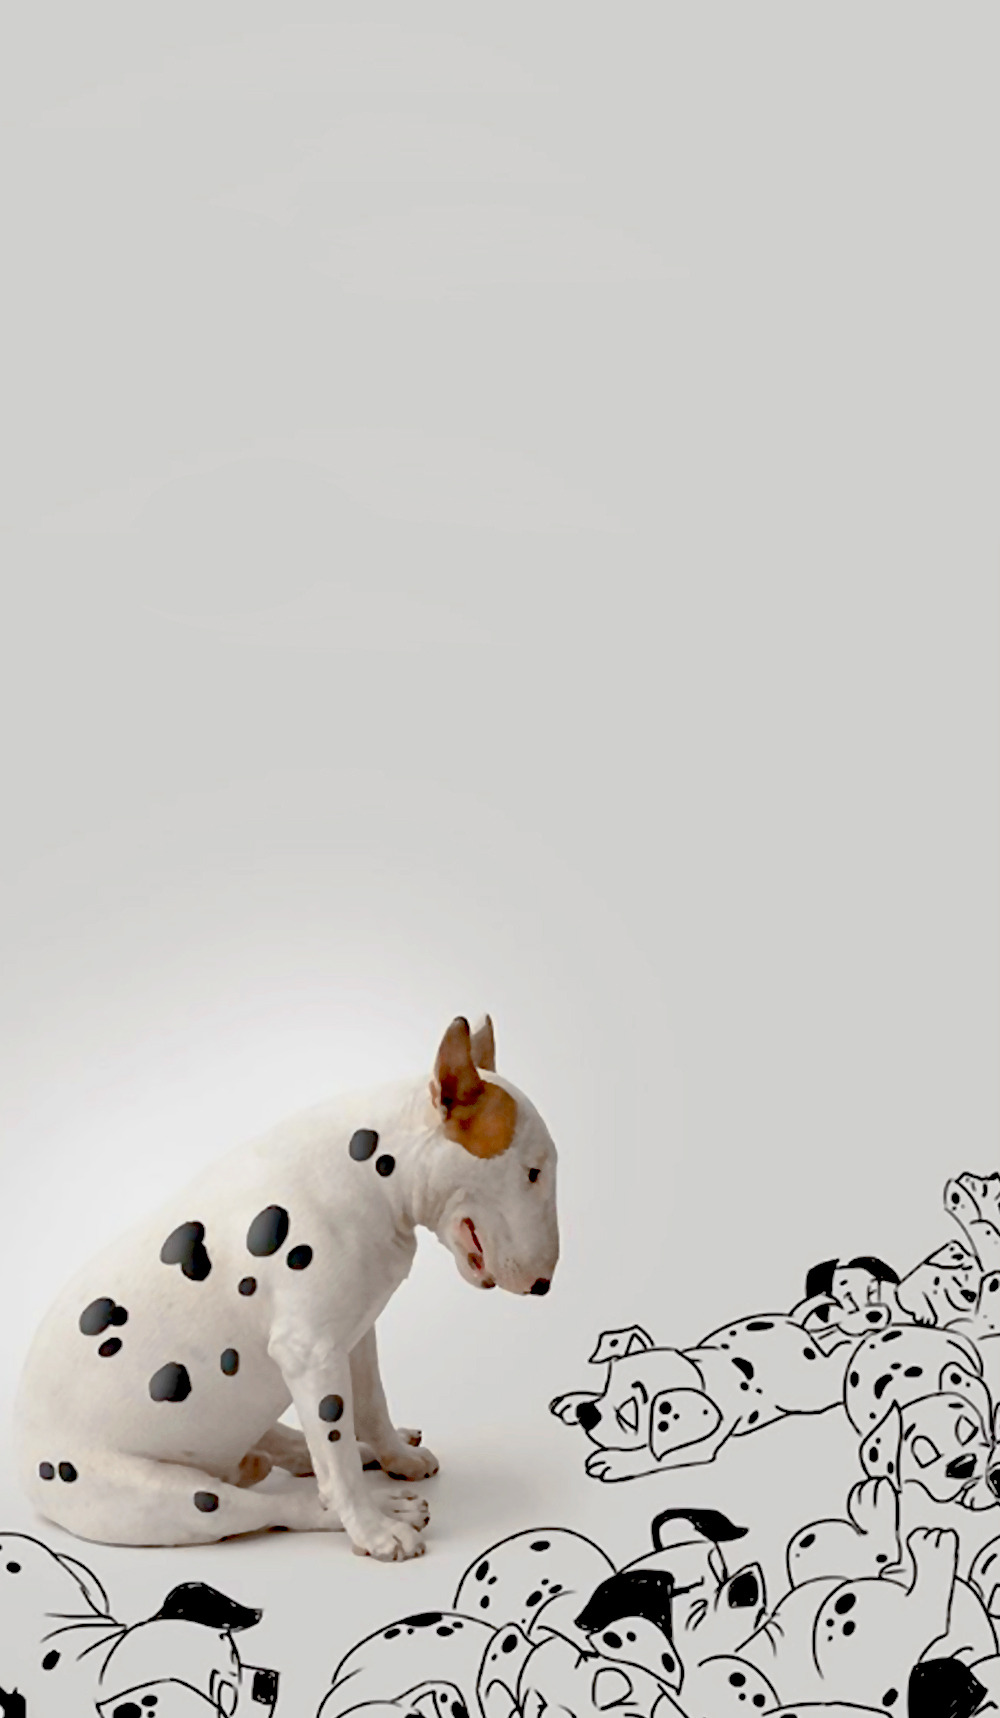 Random | — Bull Terrier | Wallpapers Instagram:...